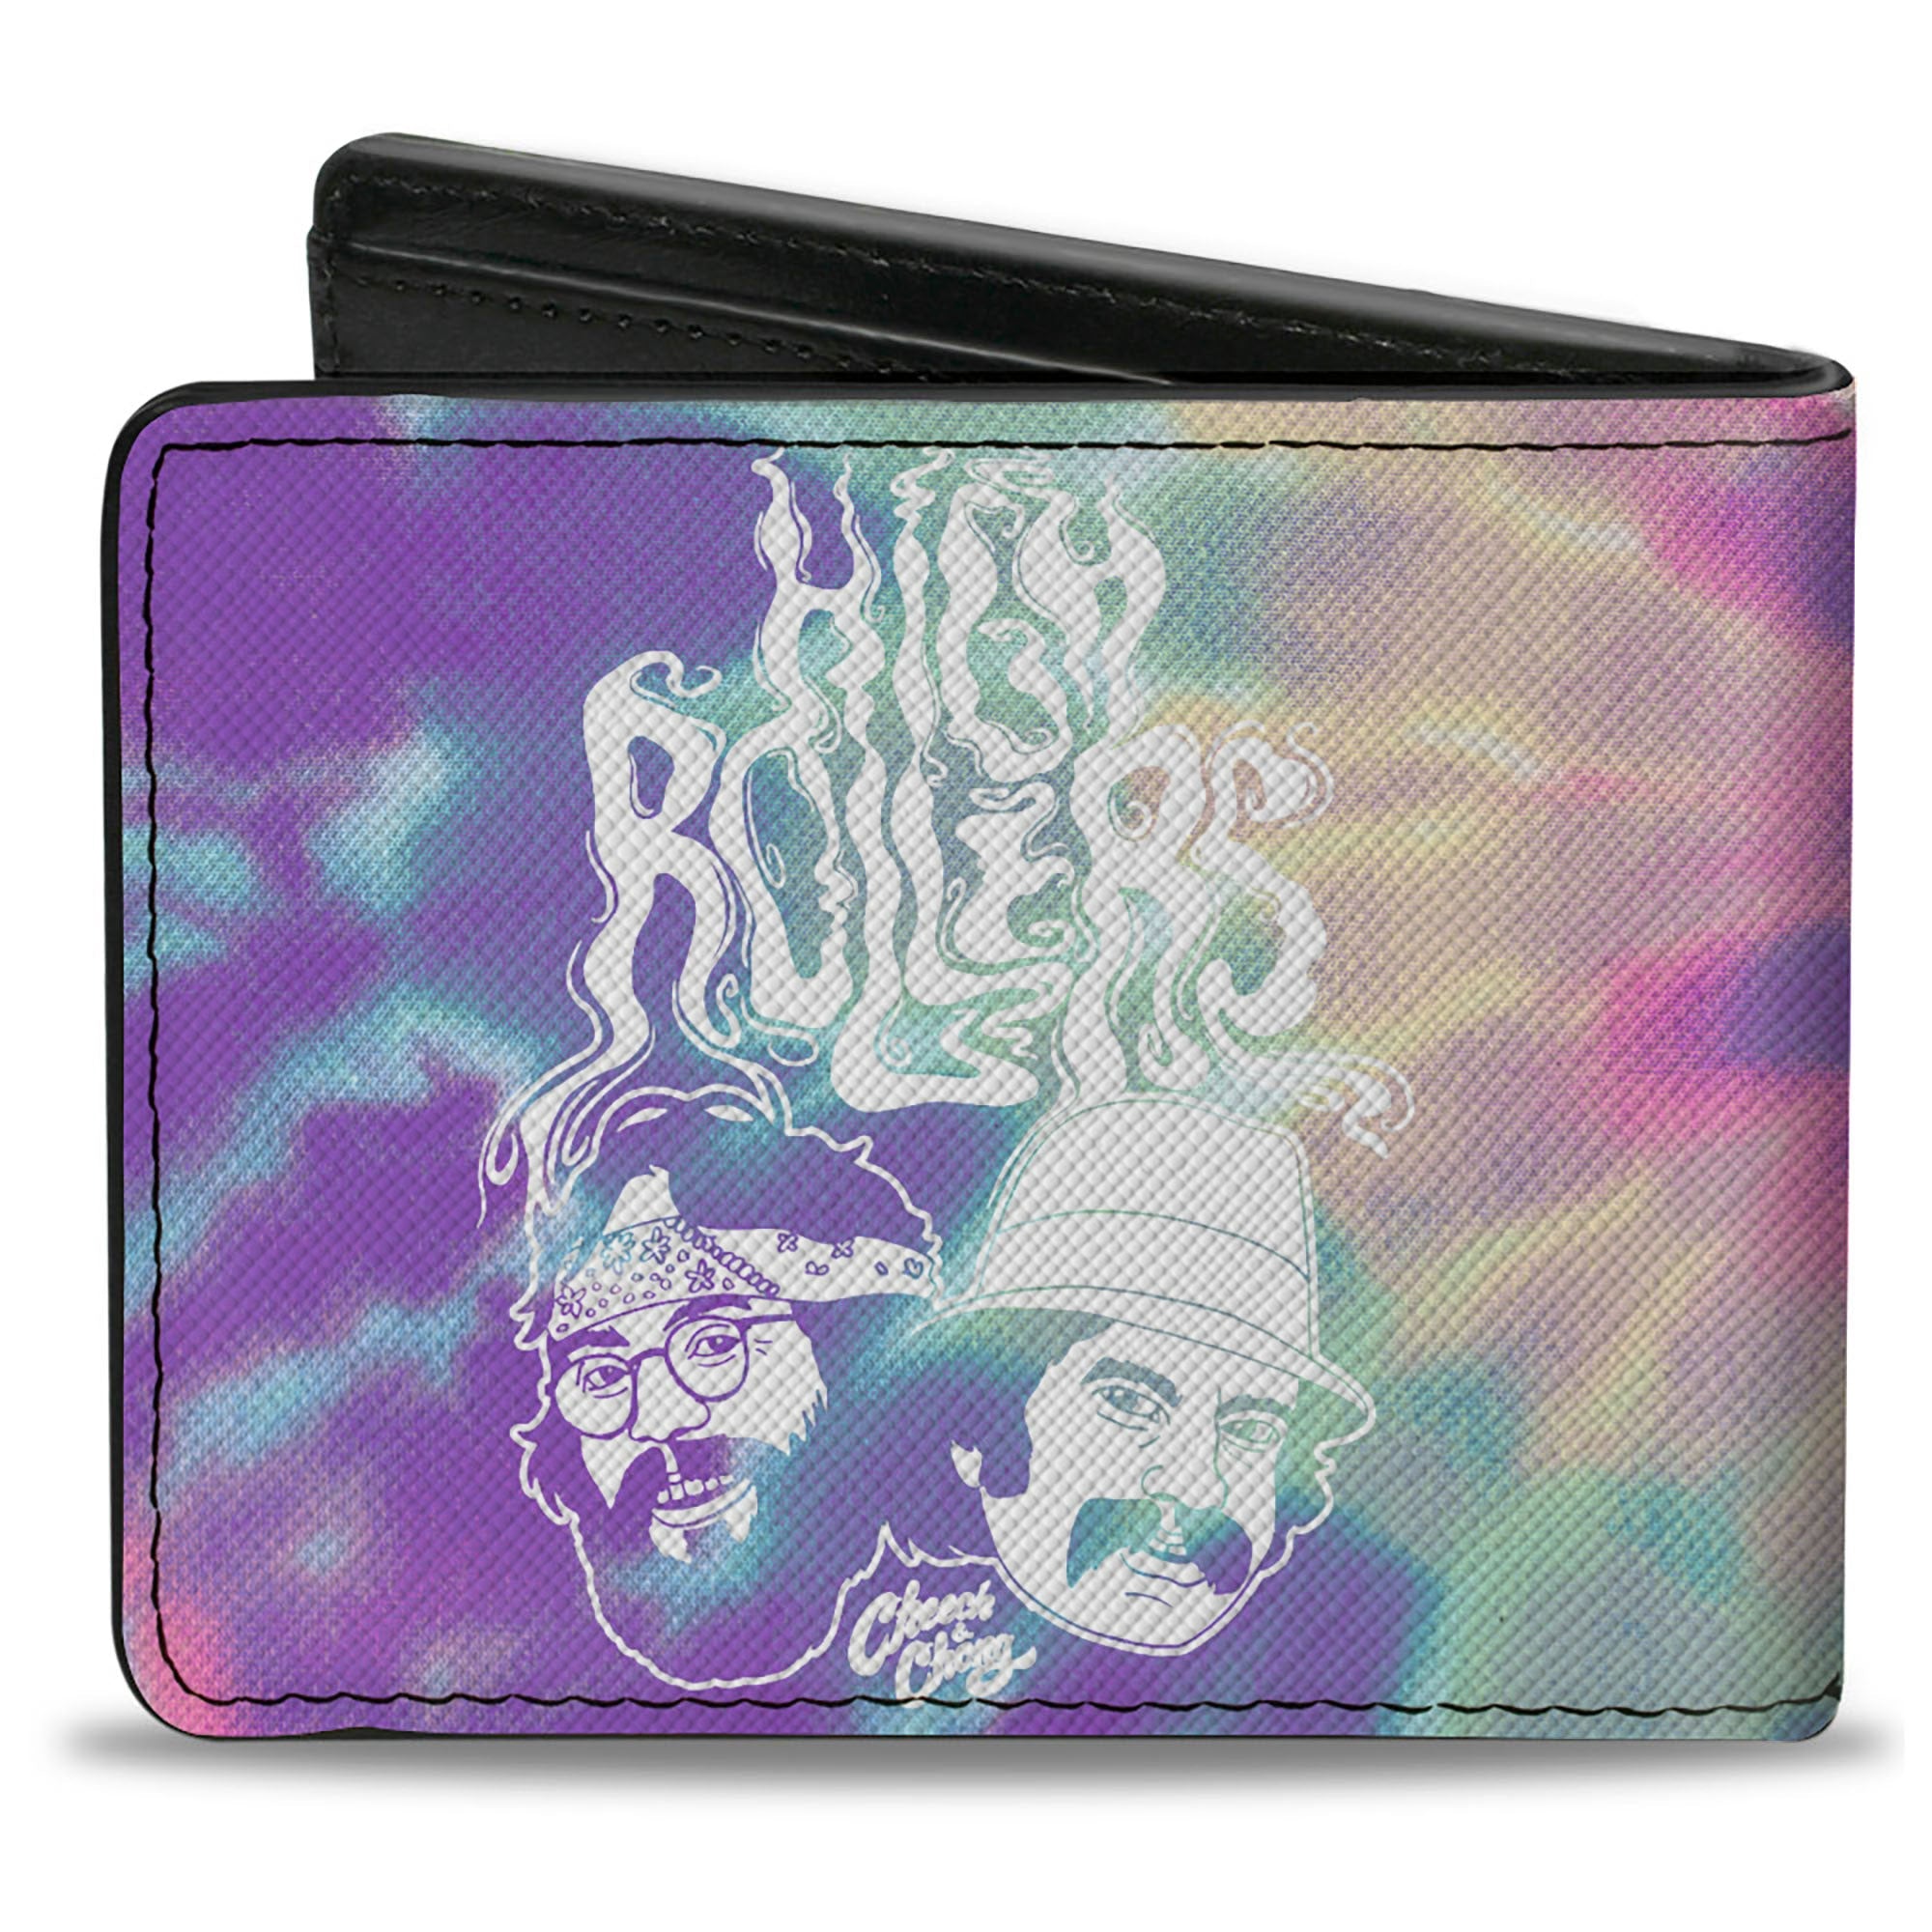 Bi-Fold Wallet - CHEECH & CHONG HIGH ROLLERS Smoke Pose Tie Dye Purples/White